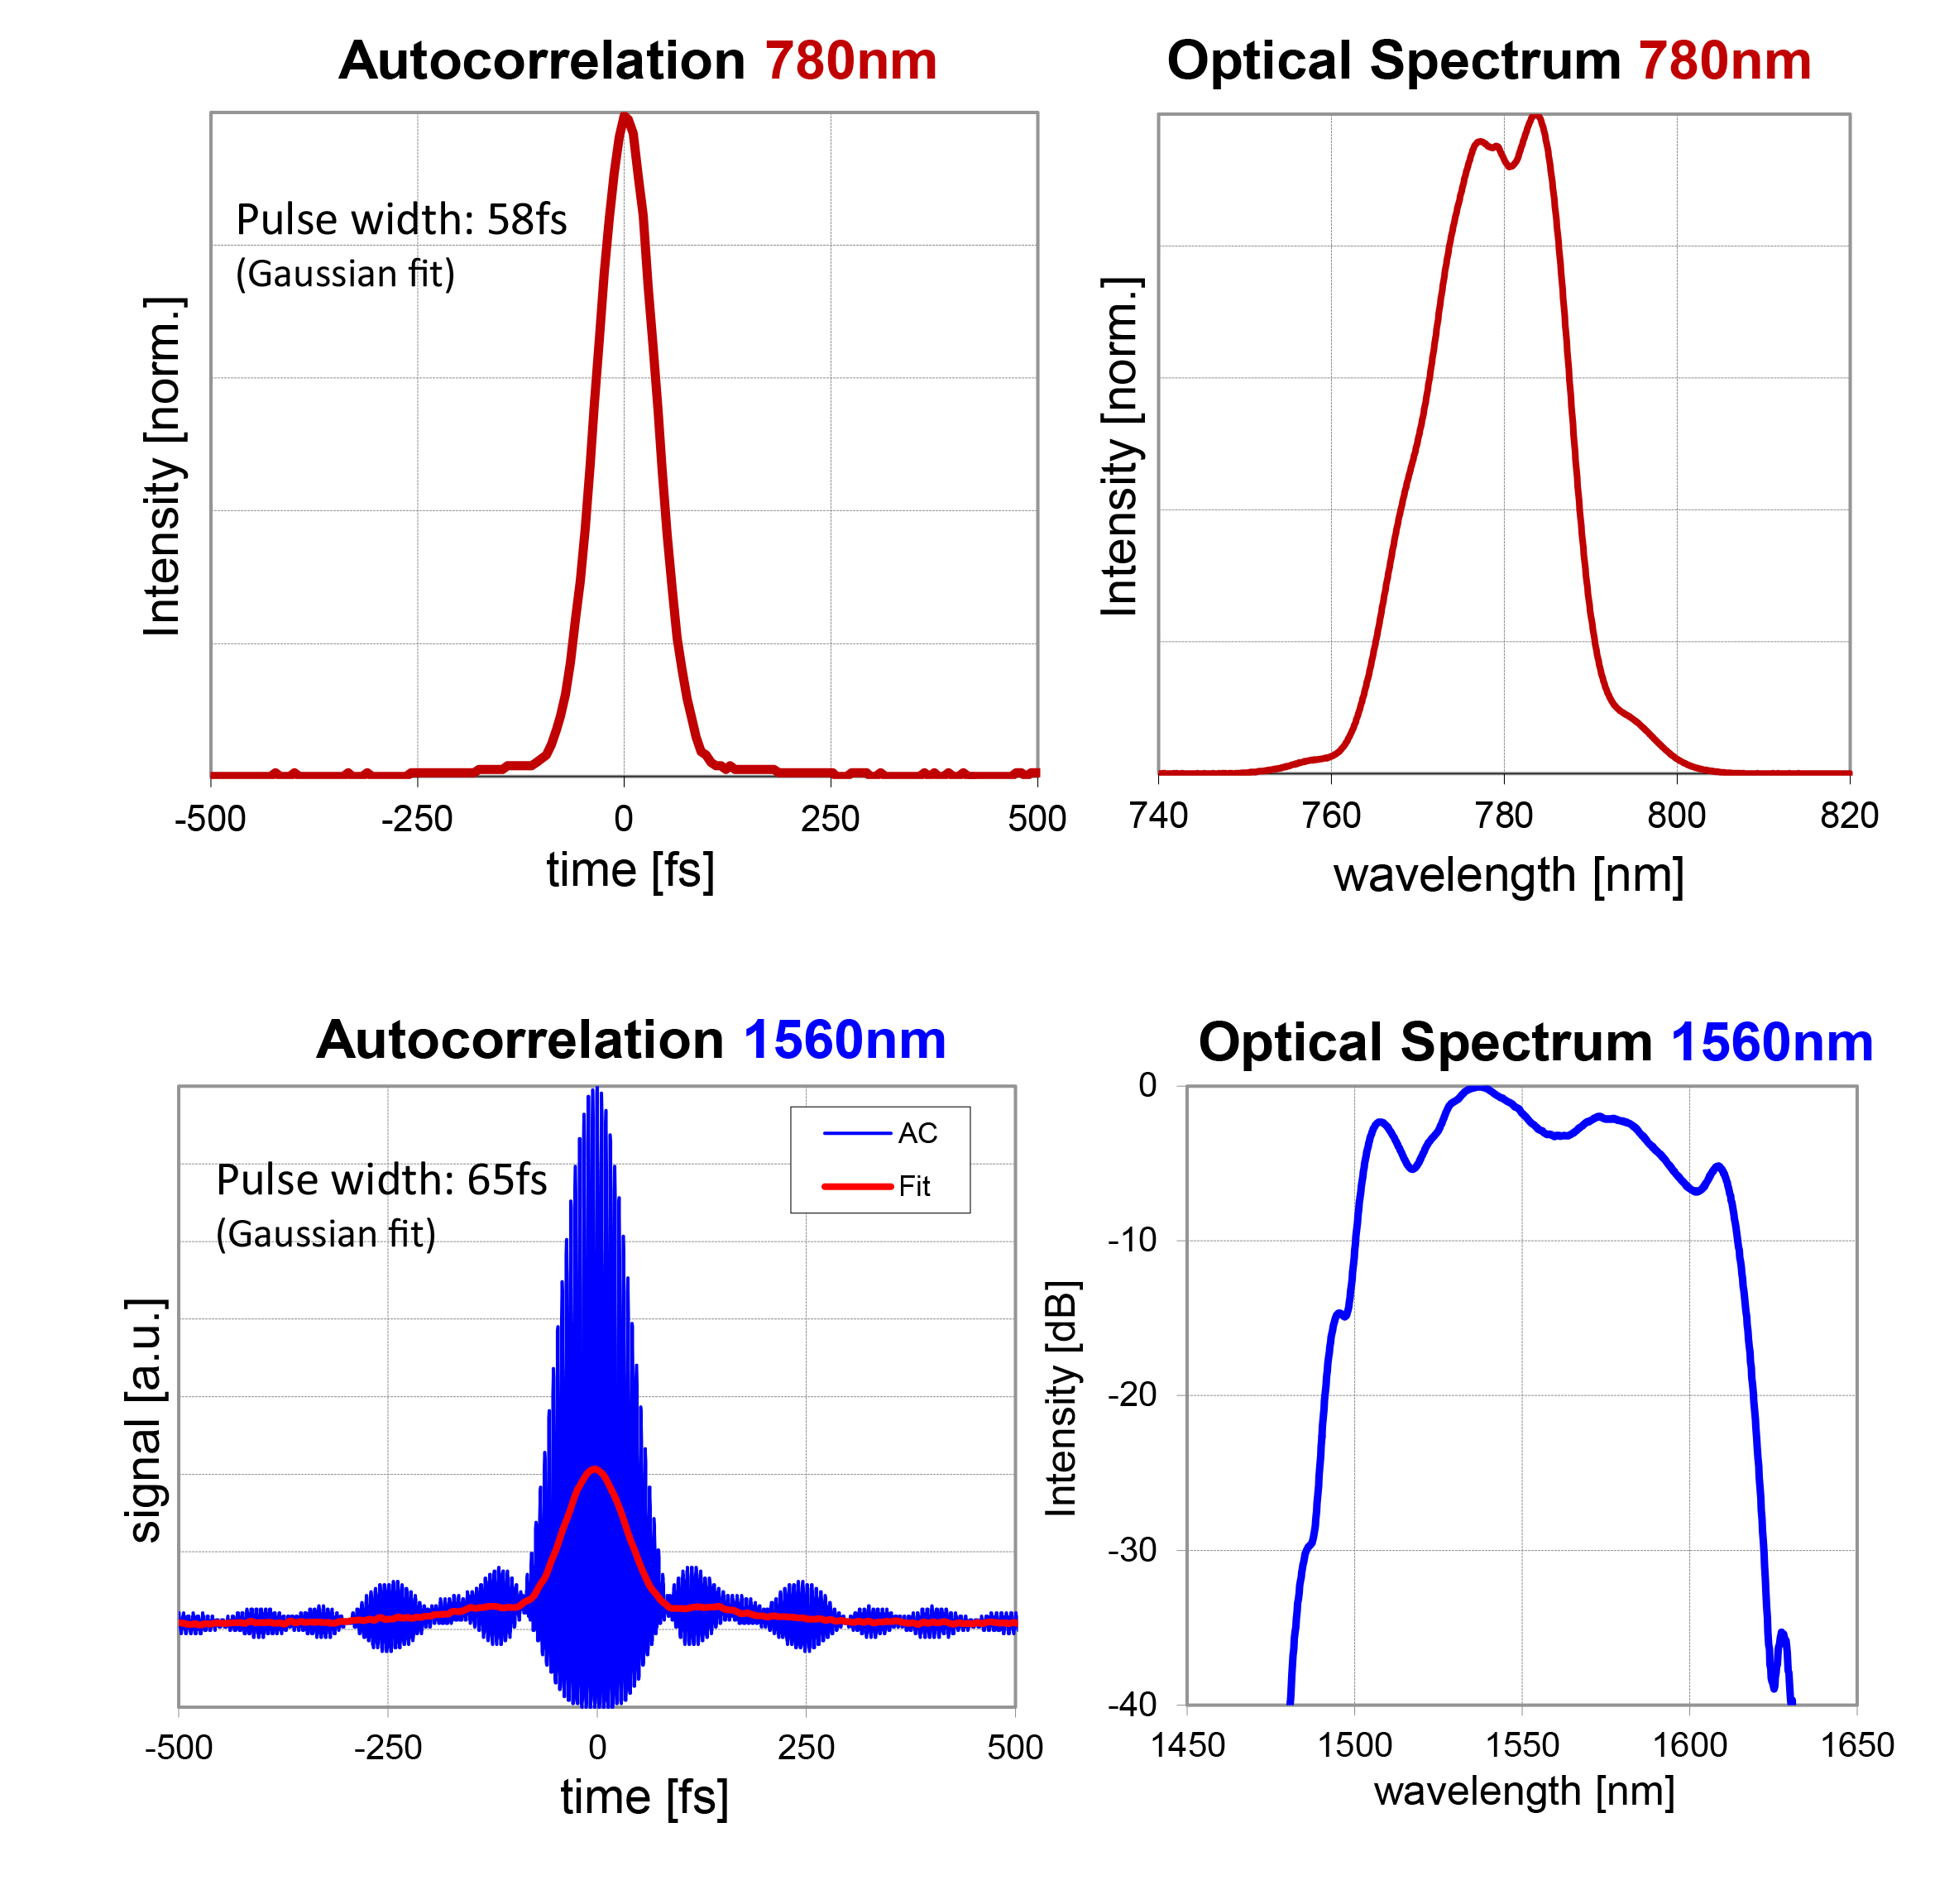 C-Fiber_780_Autocorrelation_Optical_Spectrum_780nm_and_1560 nm.jpg